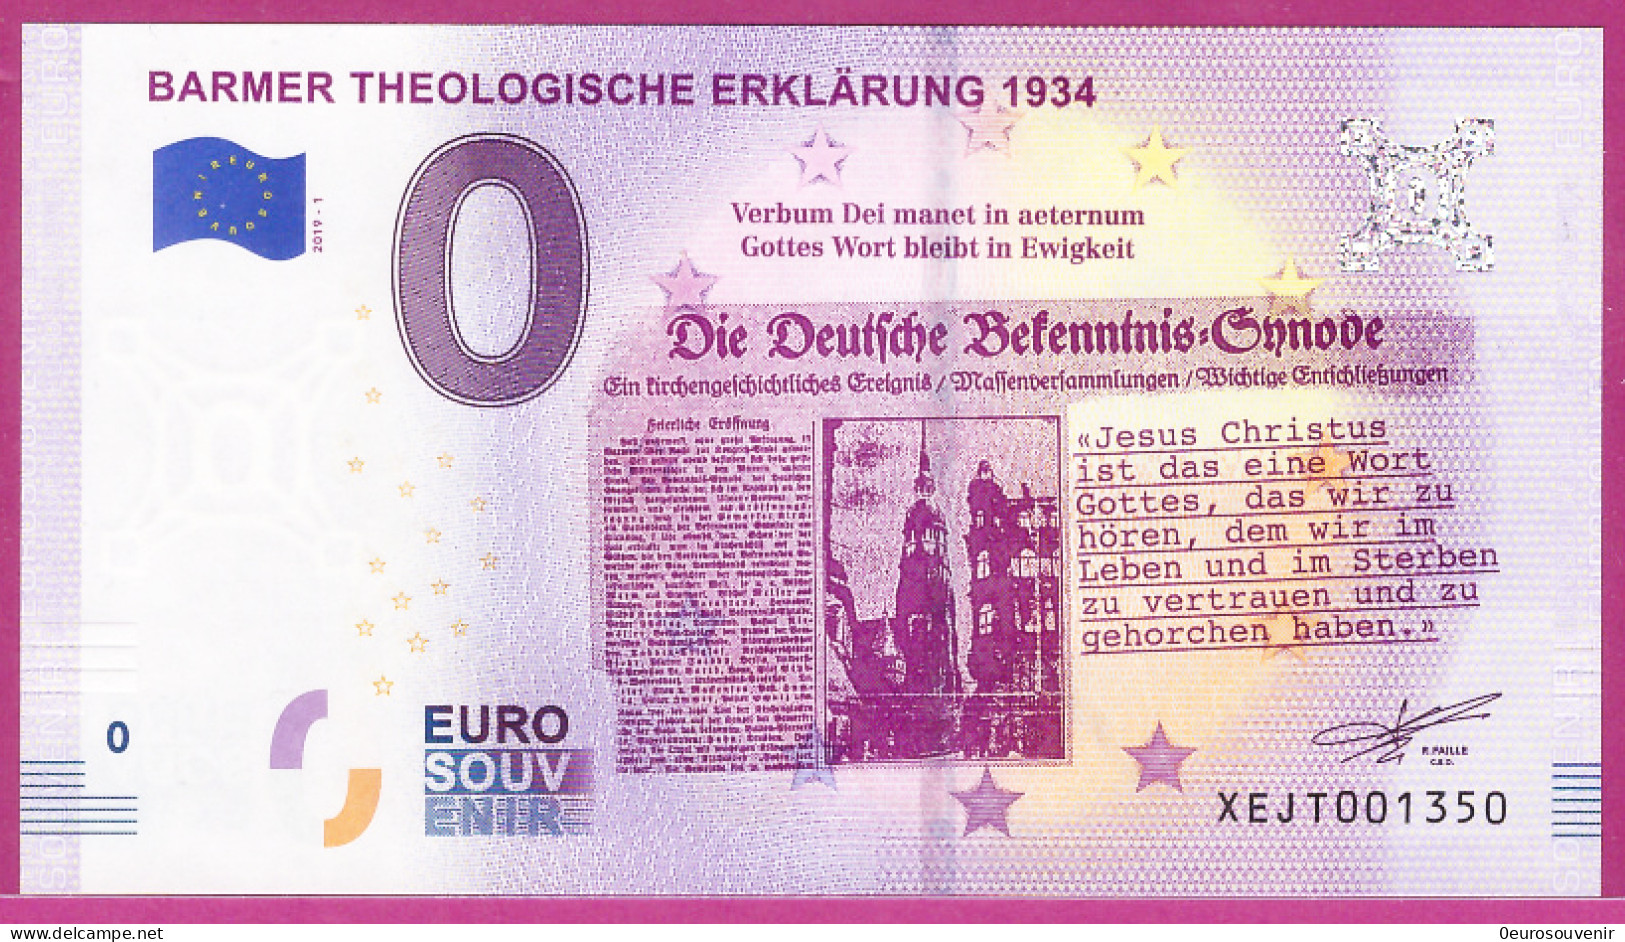 0-Euro XEJT 2019-1 BARMER THEOLOGISCHE ERKLÄRUNG 1934 - Privatentwürfe